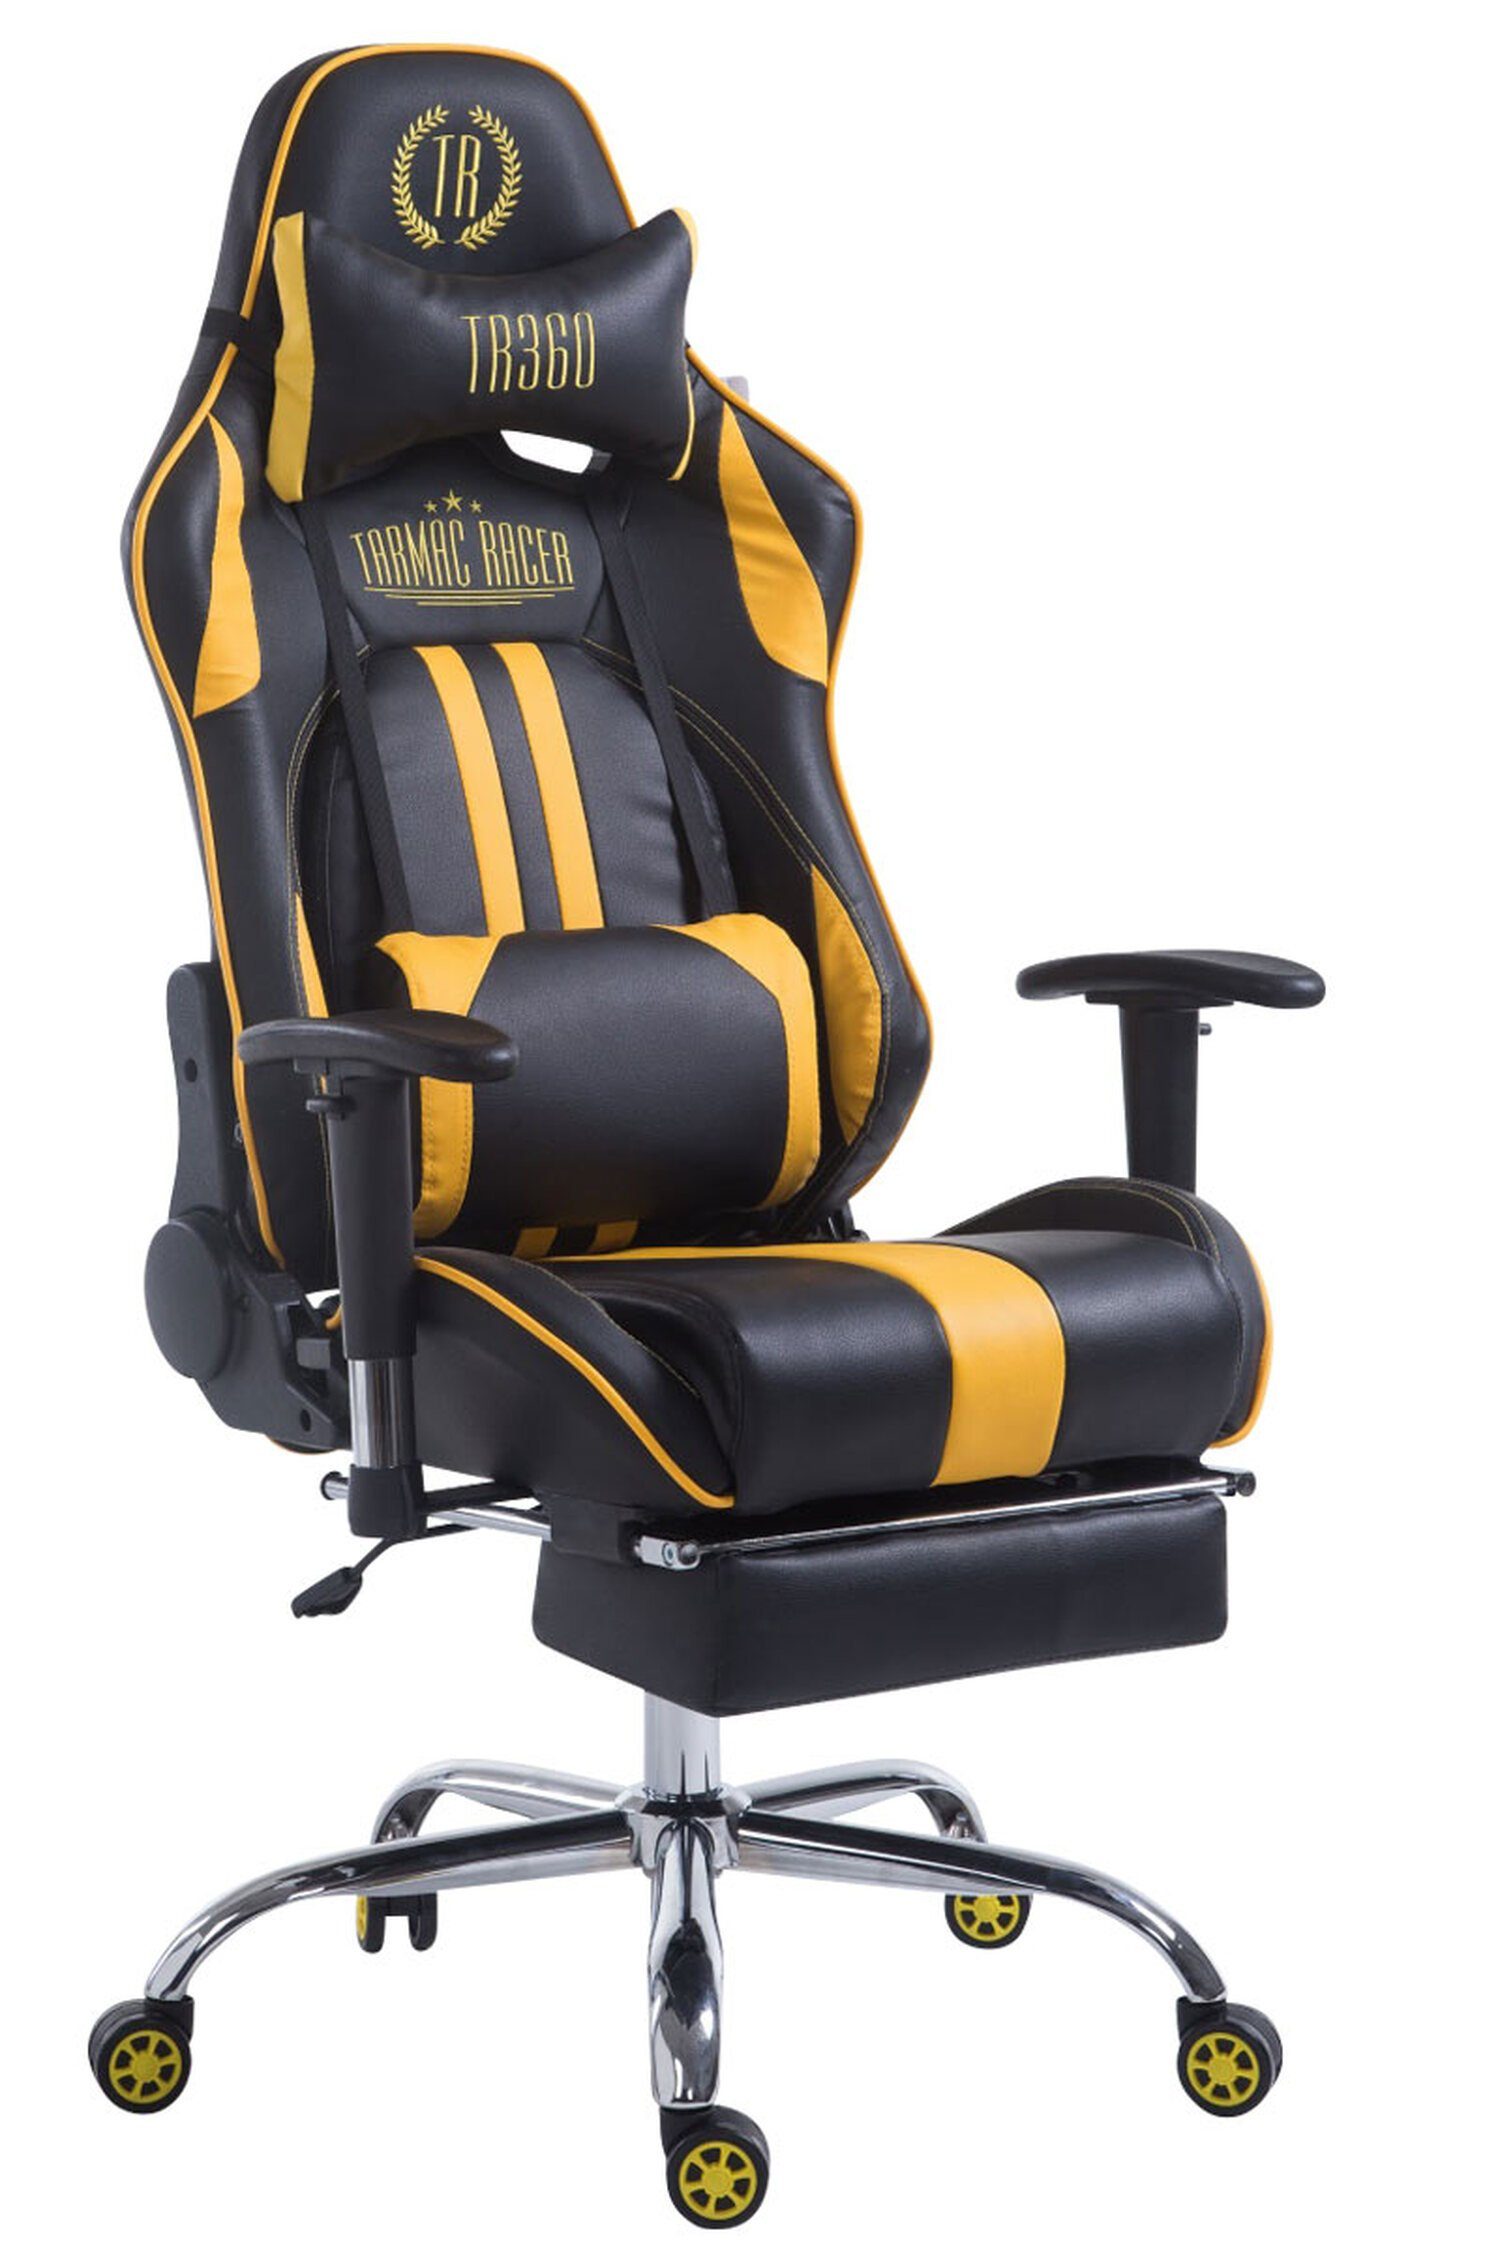 TPFLiving Gaming-Stuhl Limitless-2 mit bequemer Rückenlehne - höhenverstellbar - 360° drehbar (Schreibtischstuhl, Drehstuhl, Gamingstuhl, Racingstuhl, Chefsessel), Gestell: Metall chrom - Sitzfläche: Kunstleder schwarz/gelb